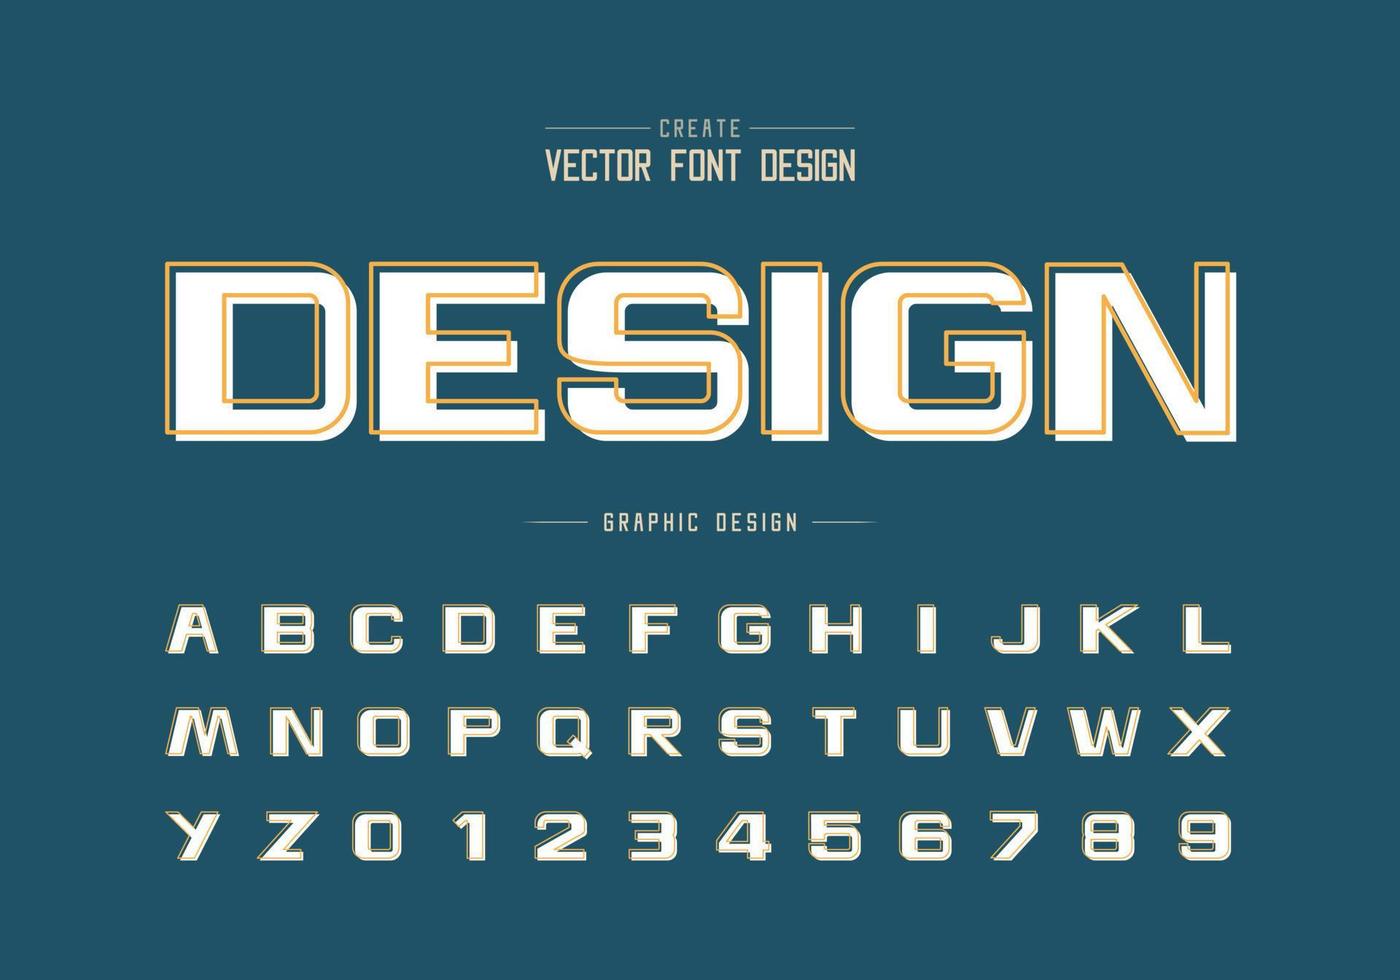 carattere di linea con ombra bianca e vettore di alfabeto in grassetto, lettera e numero del carattere tipografico di design